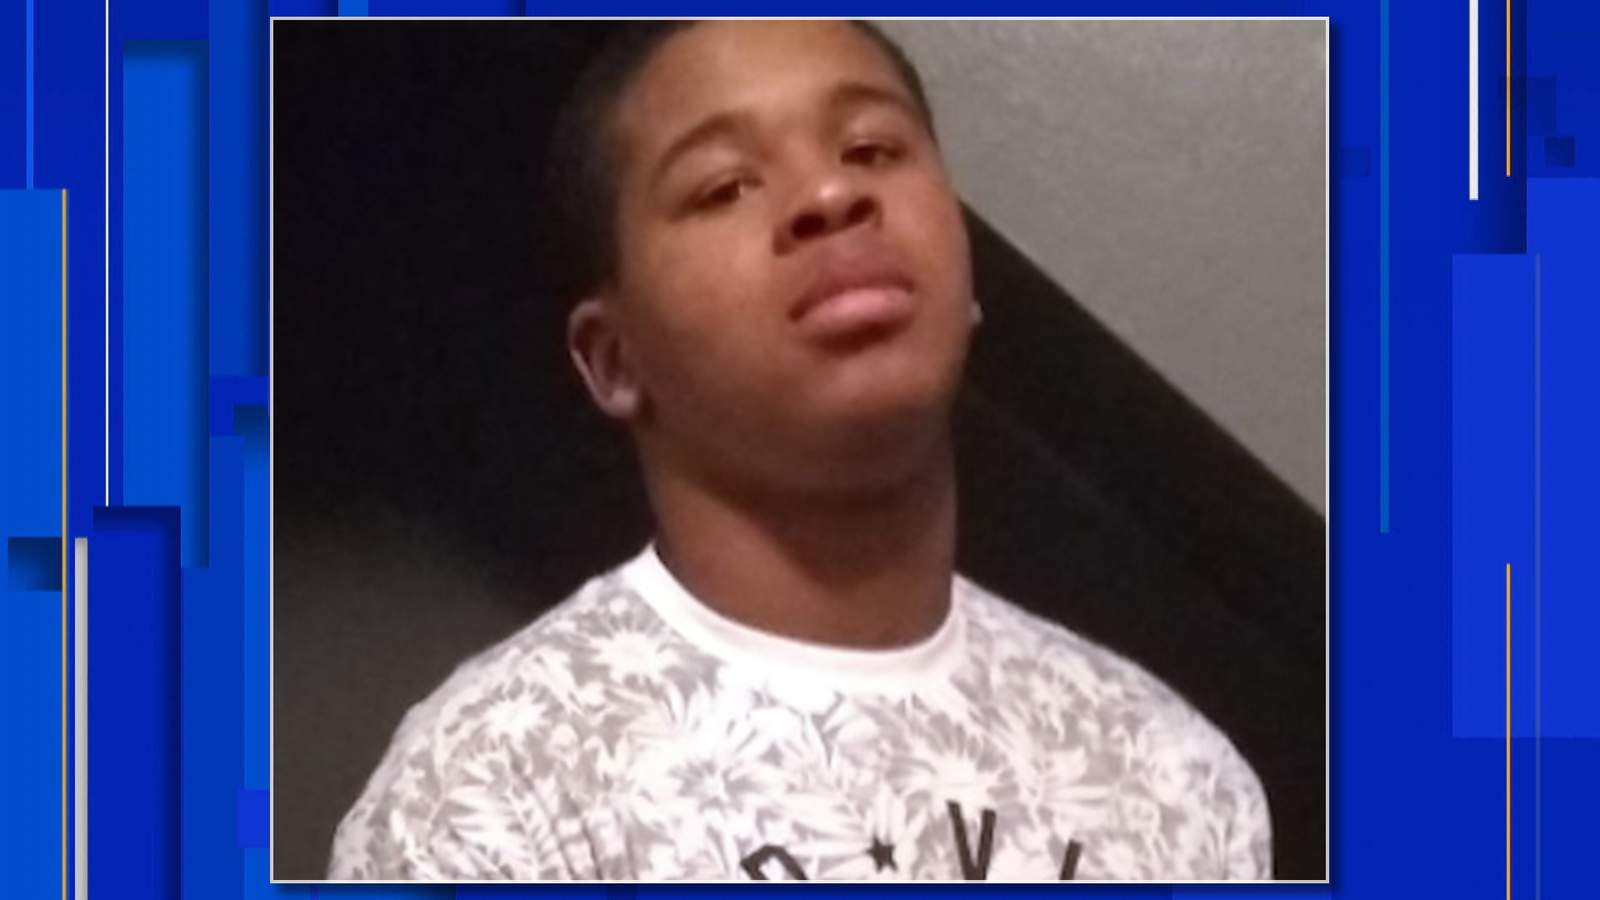 Detroit police seek missing 16-year-old boy, Devin McKee